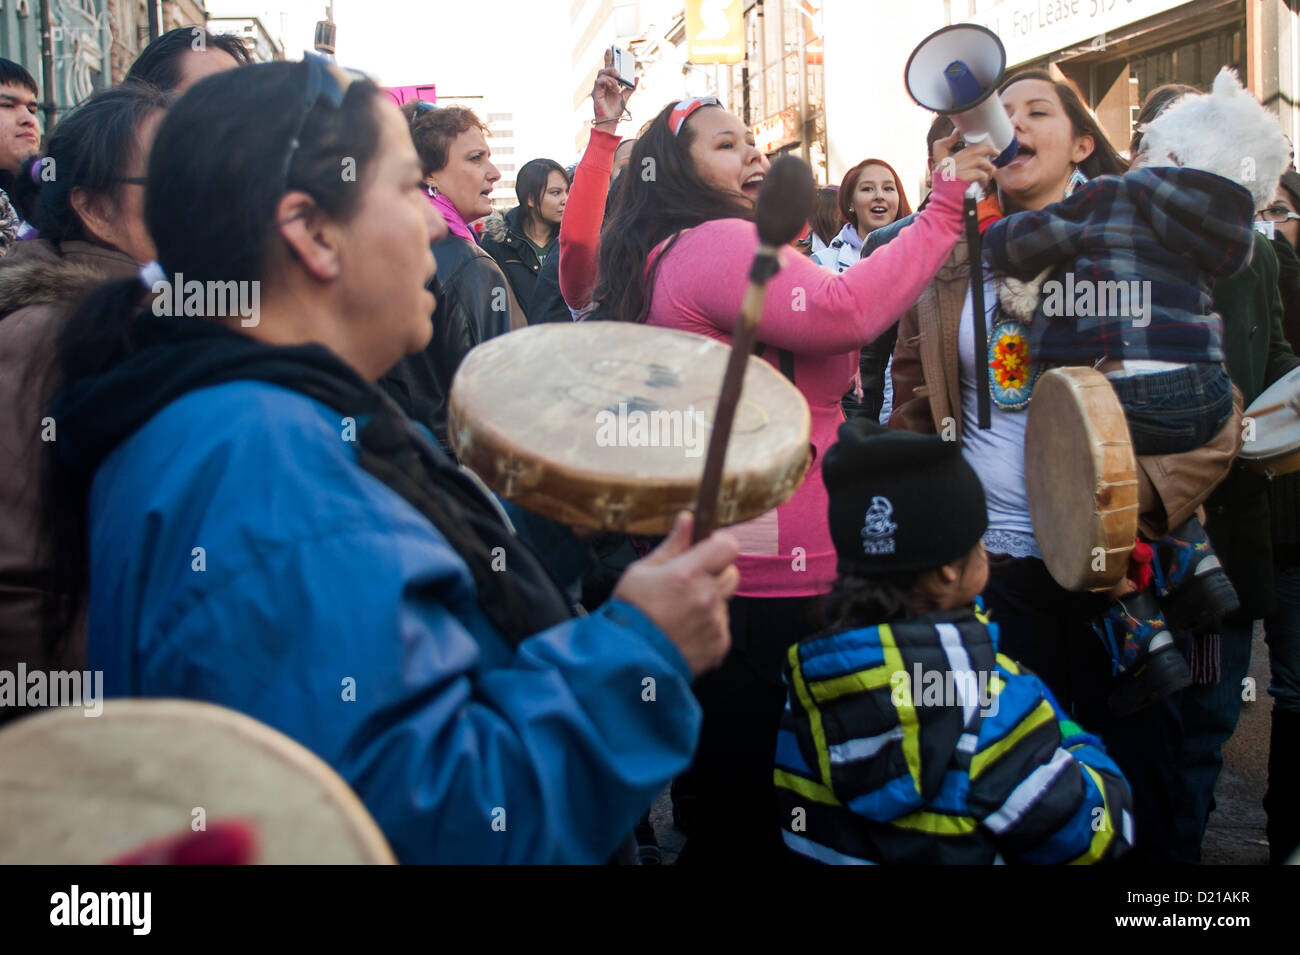 London Ontario, Kanada - 10. Januar 2013. Die Leerlauf nicht mehr Bewegung statt einen flash Mob-Protest an den Ecken der Dundas und Richmond Street in London im Laufe der Stunde Mittag. Eine geschätzte 600-700 Menschen versammelten sich auf dem Bürgersteig und nahm bis zur Kreuzung, wenn die Uhr 12:00 schlug. Der Protest dauerte Approximatley 45 Minuten gab es in denen Kreis tanzen, Trommeln, singen und reden der First Nations und First Nations Einzelpersonen. Das Publikum war von jung und alt Demonstranten zeigt Unterstützung für die Bewegung gebildet. Stockfoto